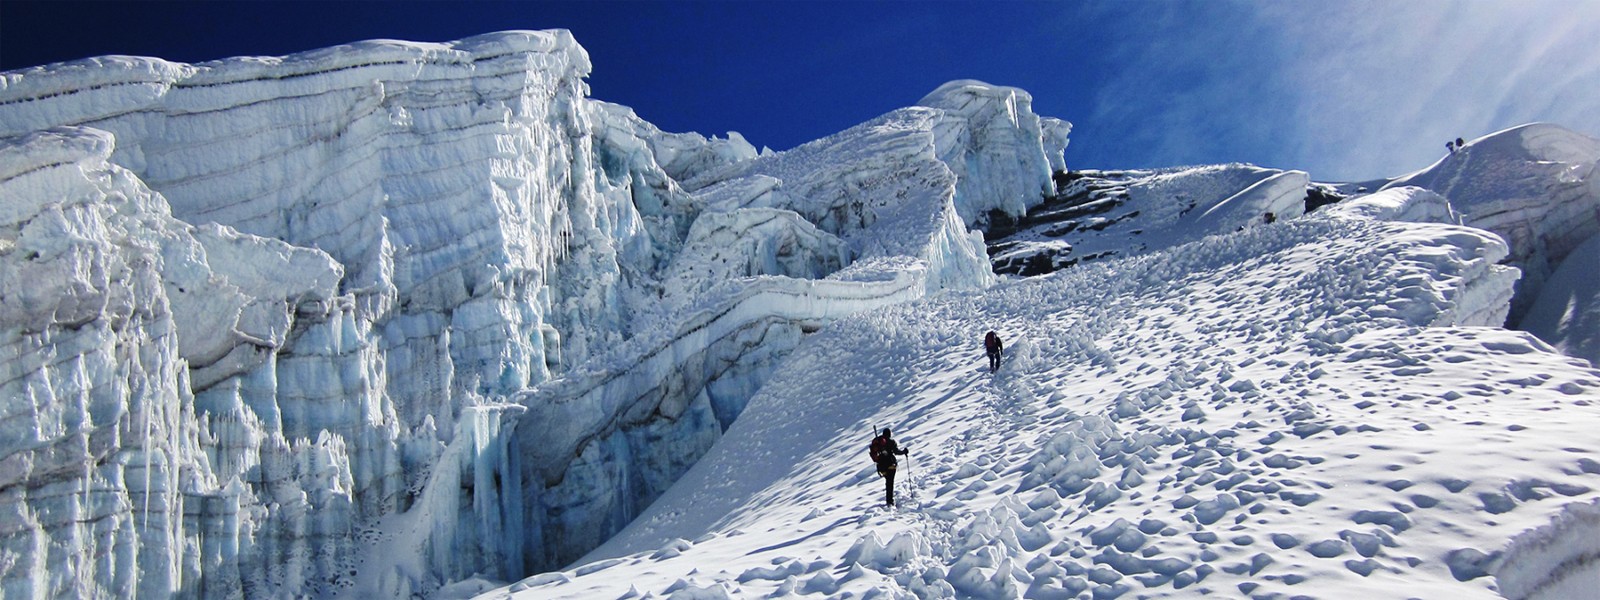 Mera peak Expedition and Ampu Lapcha Pass